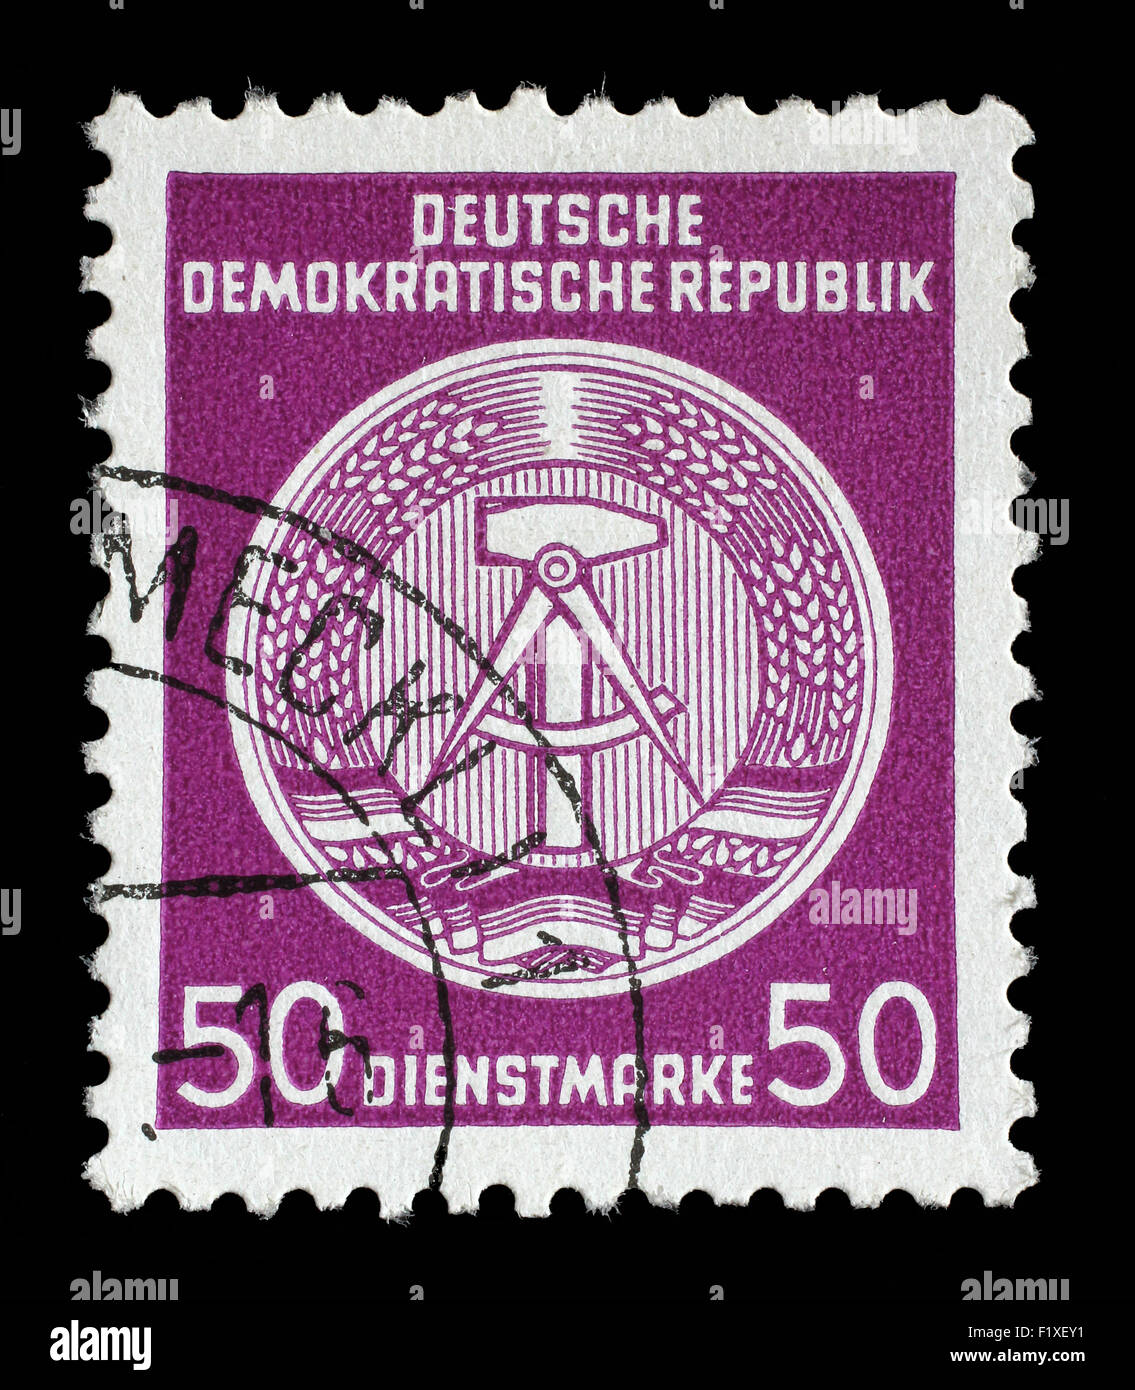 Timbres en RDA (République démocratique allemande - l'Allemagne de l'Est) montre les armoiries nationales DDR, vers 1952 Banque D'Images